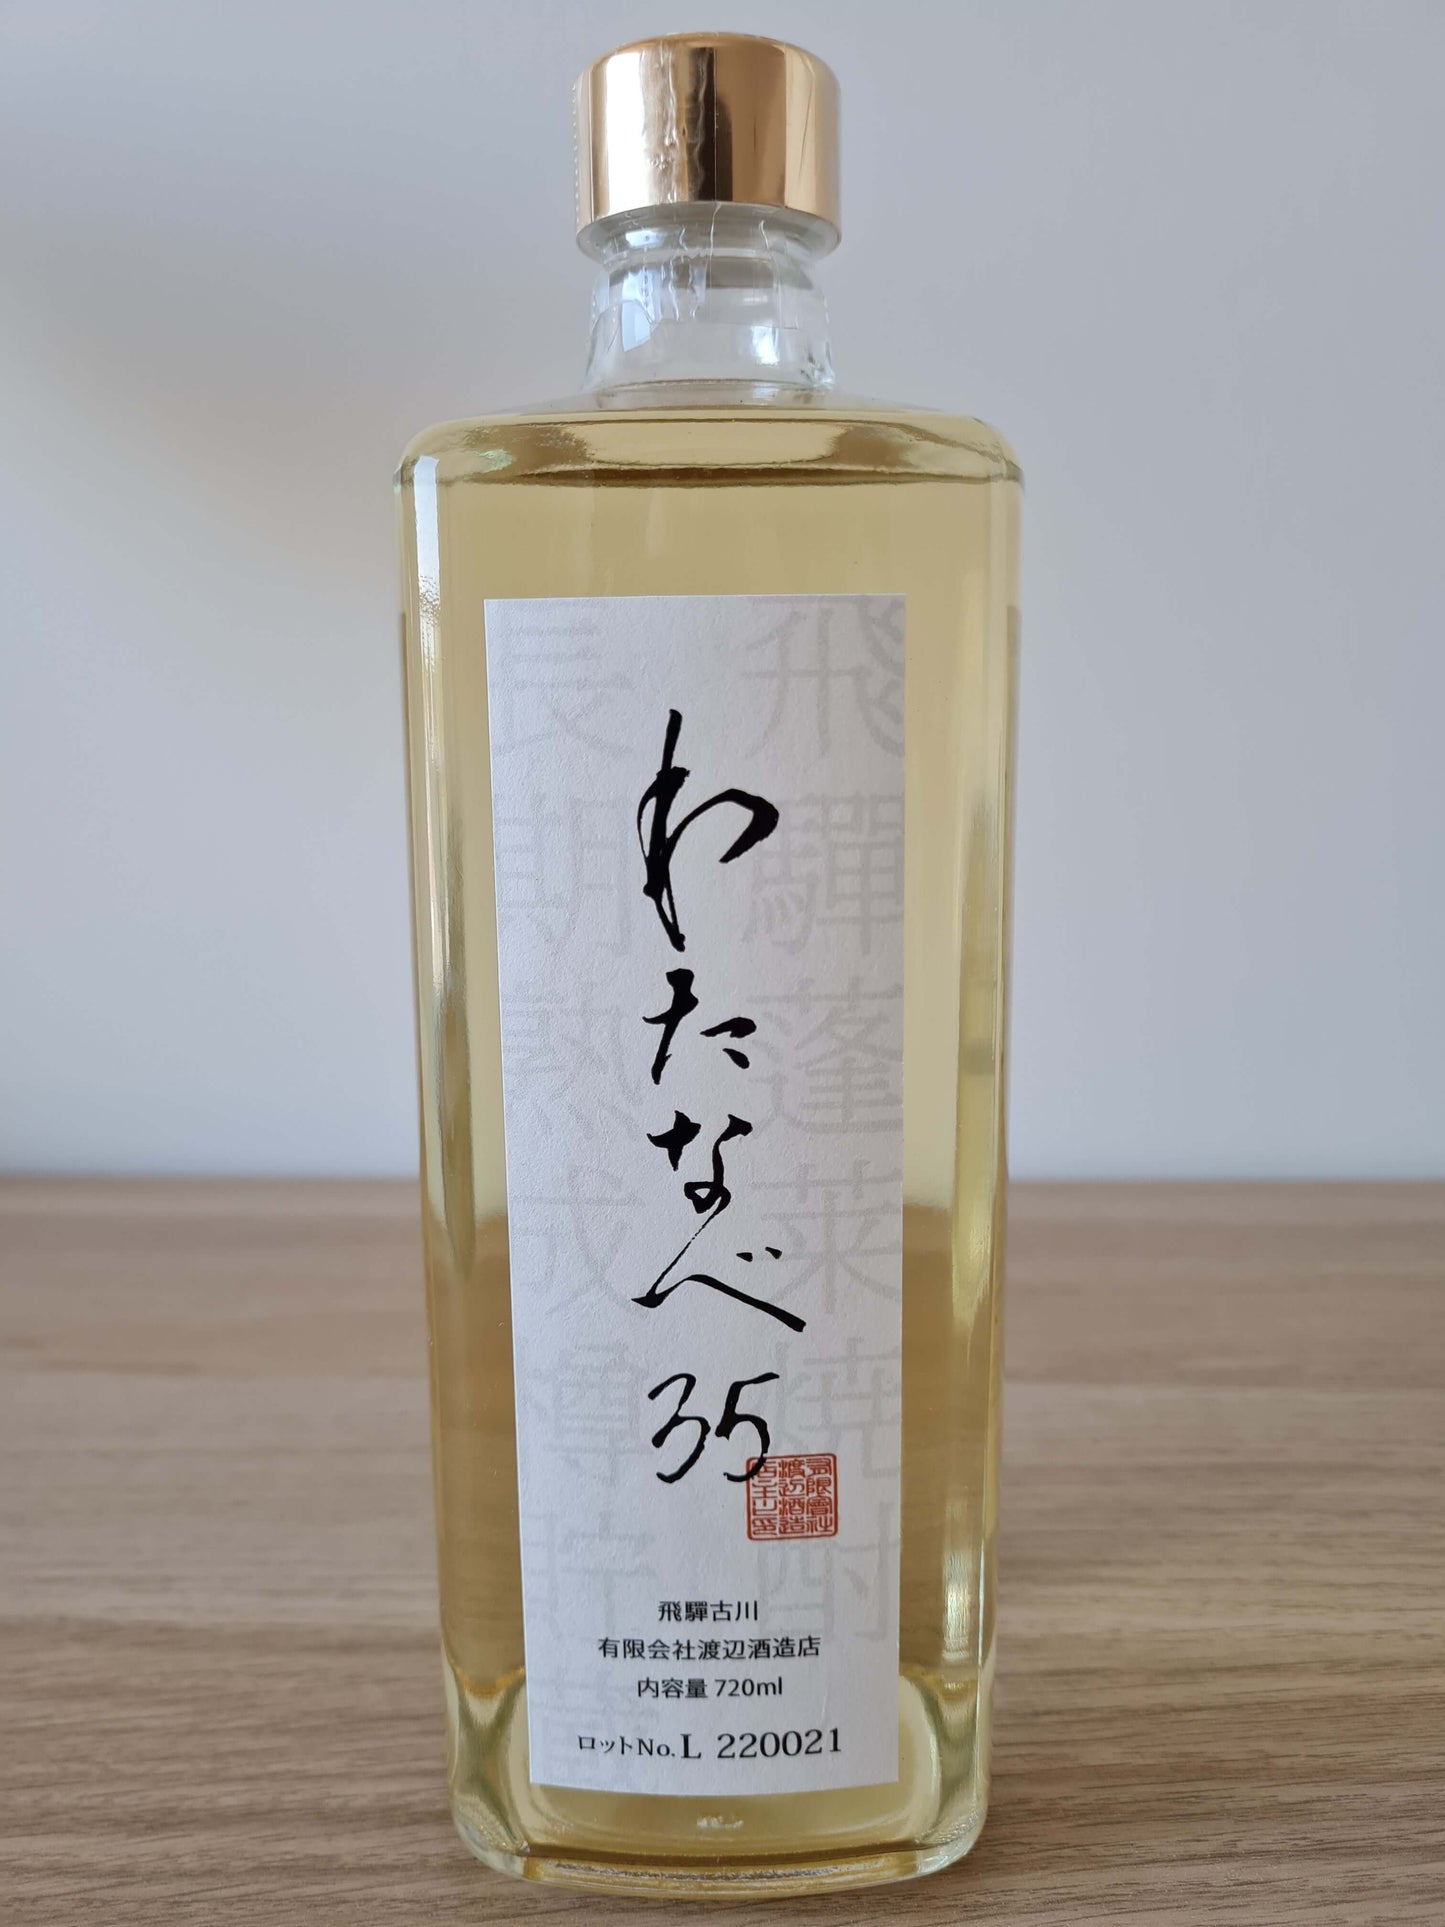 HONKAKU KASUTORI (Sake-Kasu) SHOCHU “WATANABE 35” 35% 720ml